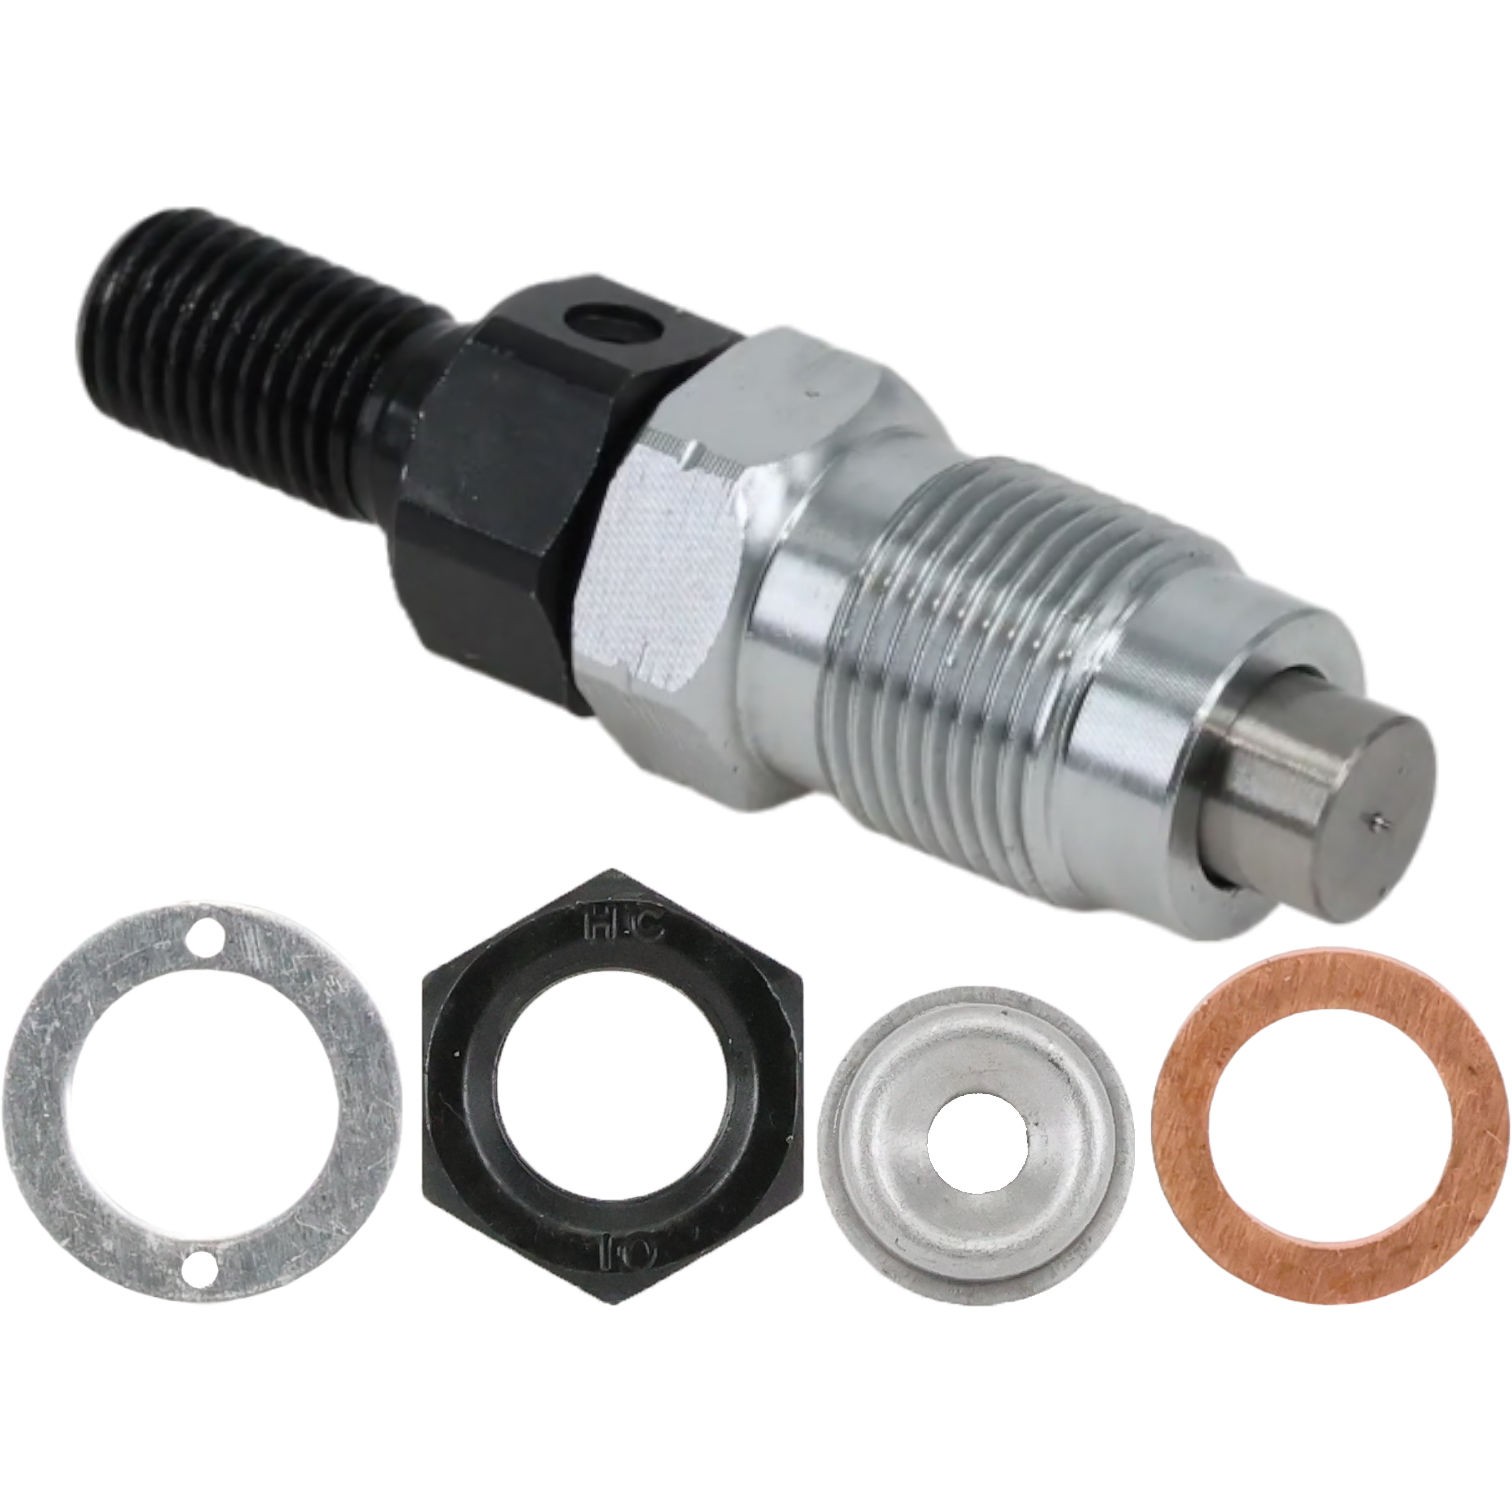 Fuel Injector fits Kubota Equipment | 16001-53000 - 1600153000